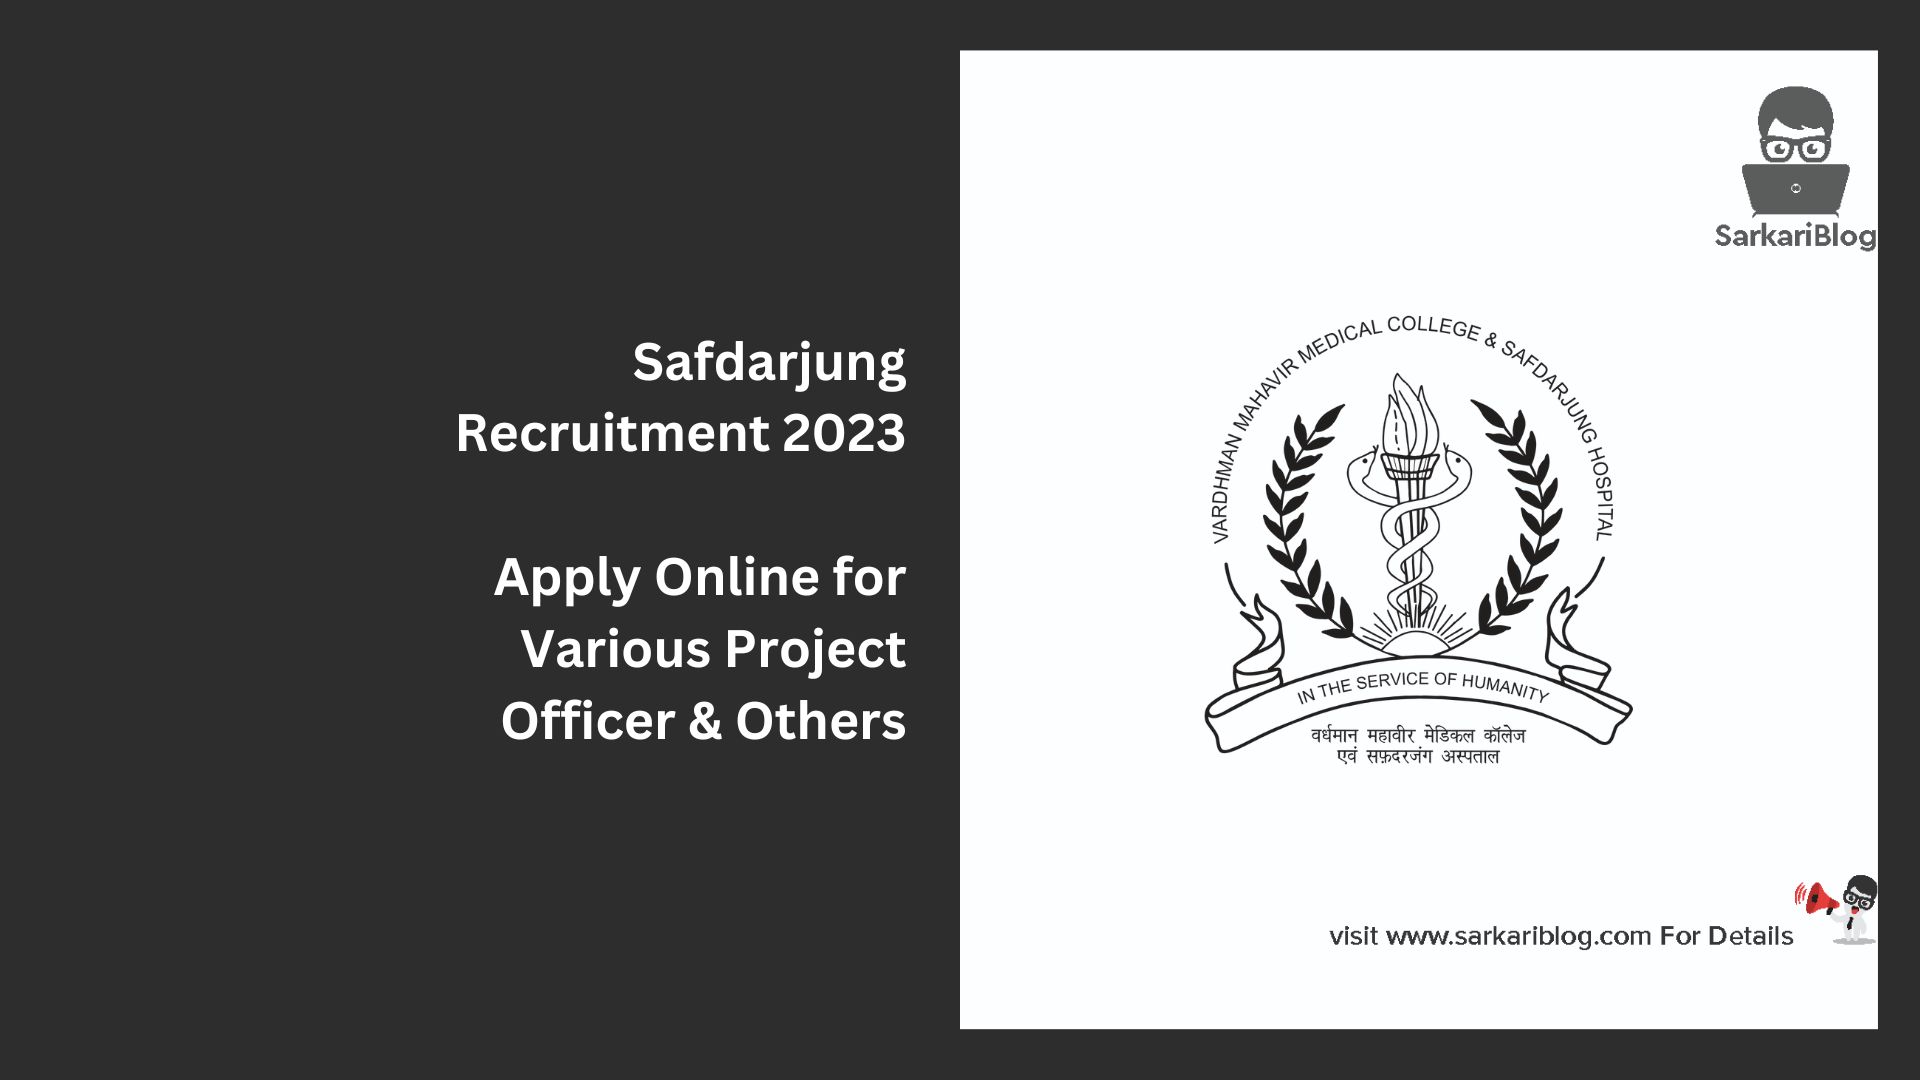 Safdarjung Recruitment 2023